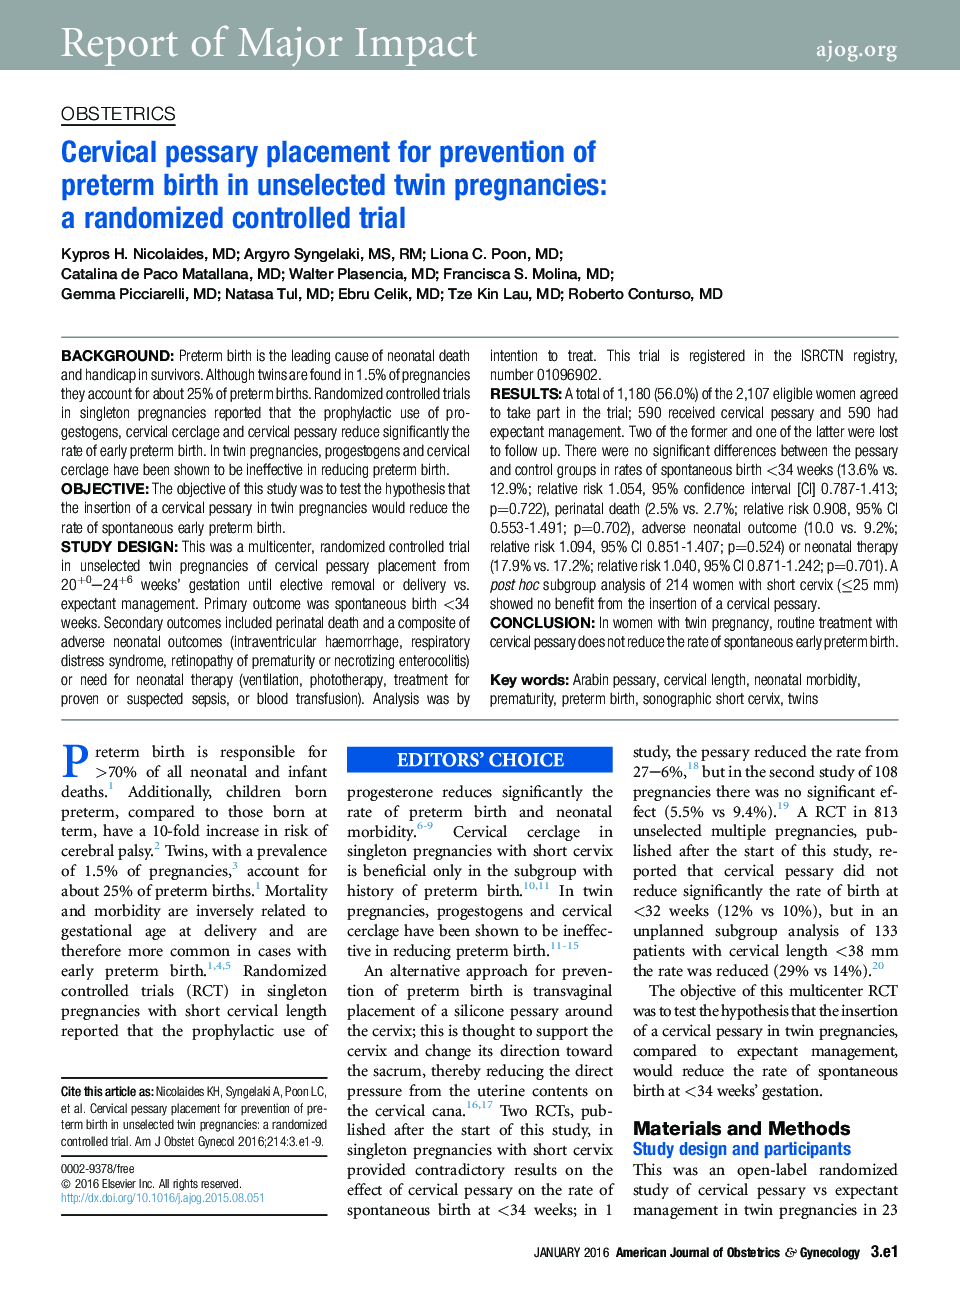 قرار دادن pessary دهانه رحم برای جلوگیری از زایمان زودرس در بارداری دوقلوهای انتخاب نشده: یک کارآزمایی کنترل شده تصادفی